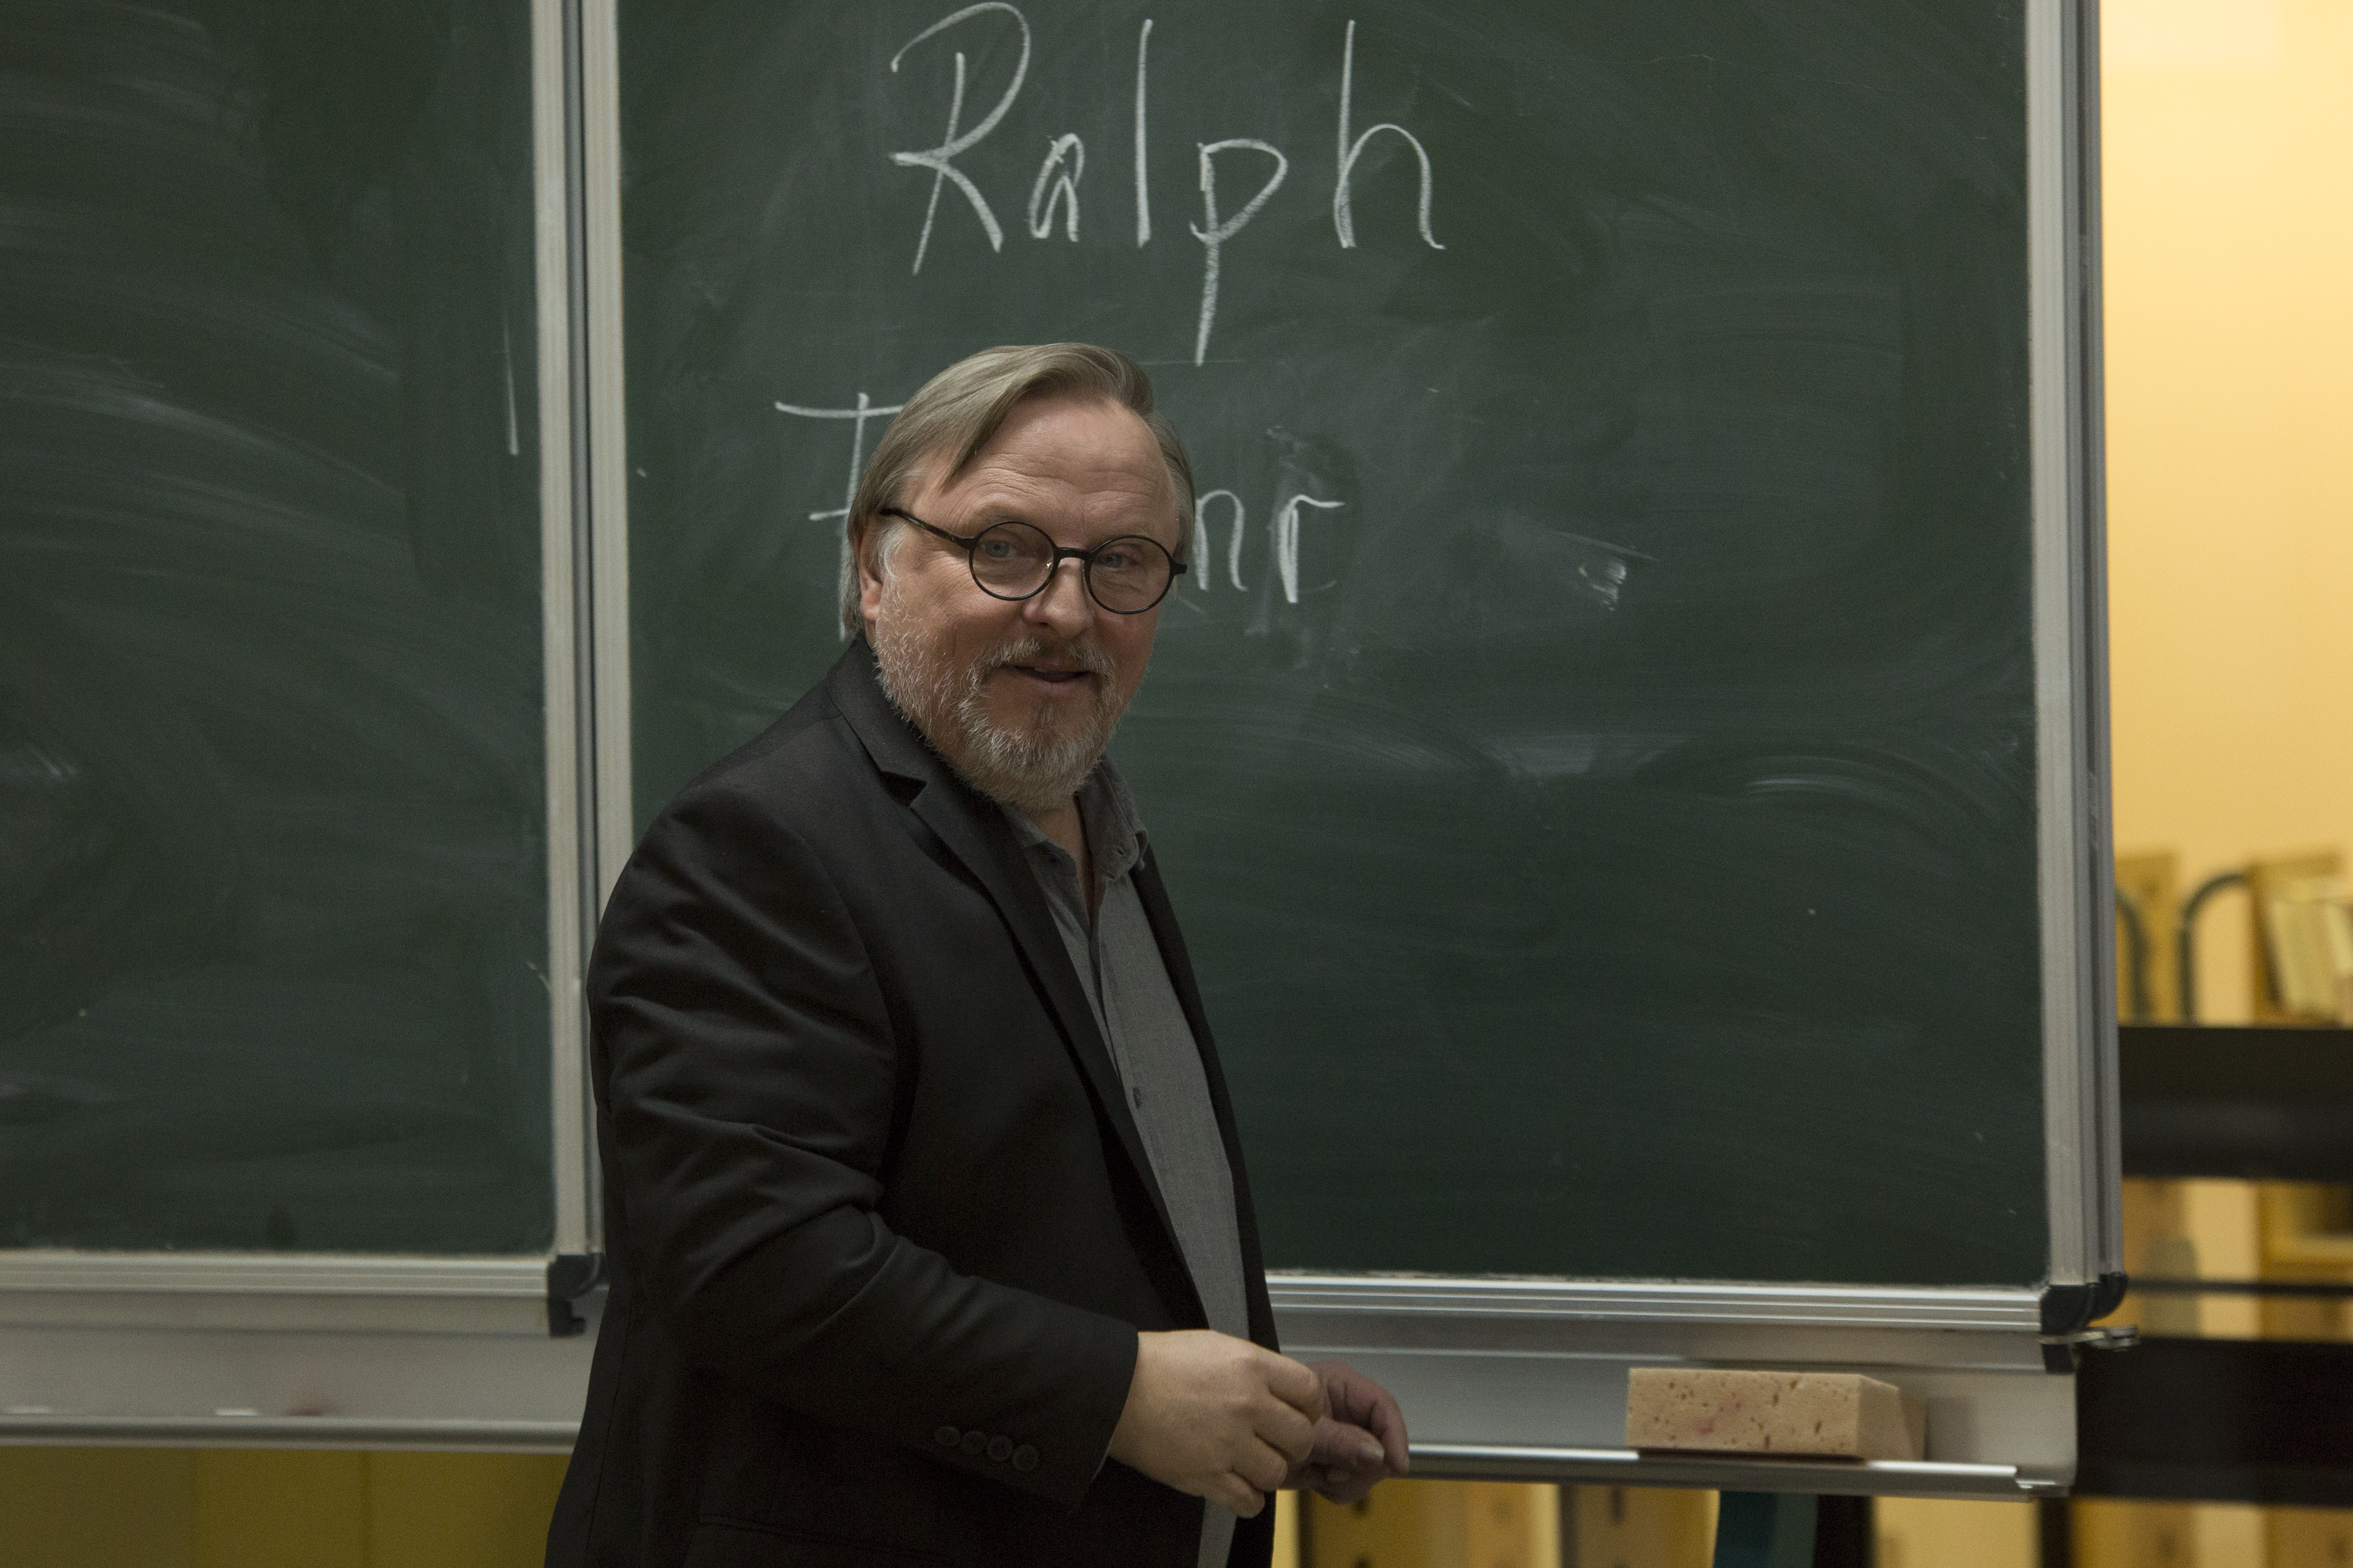 EXTRAKLASSE: Axel Prahl in seiner Rolle als Lehrer Ralph Friesner